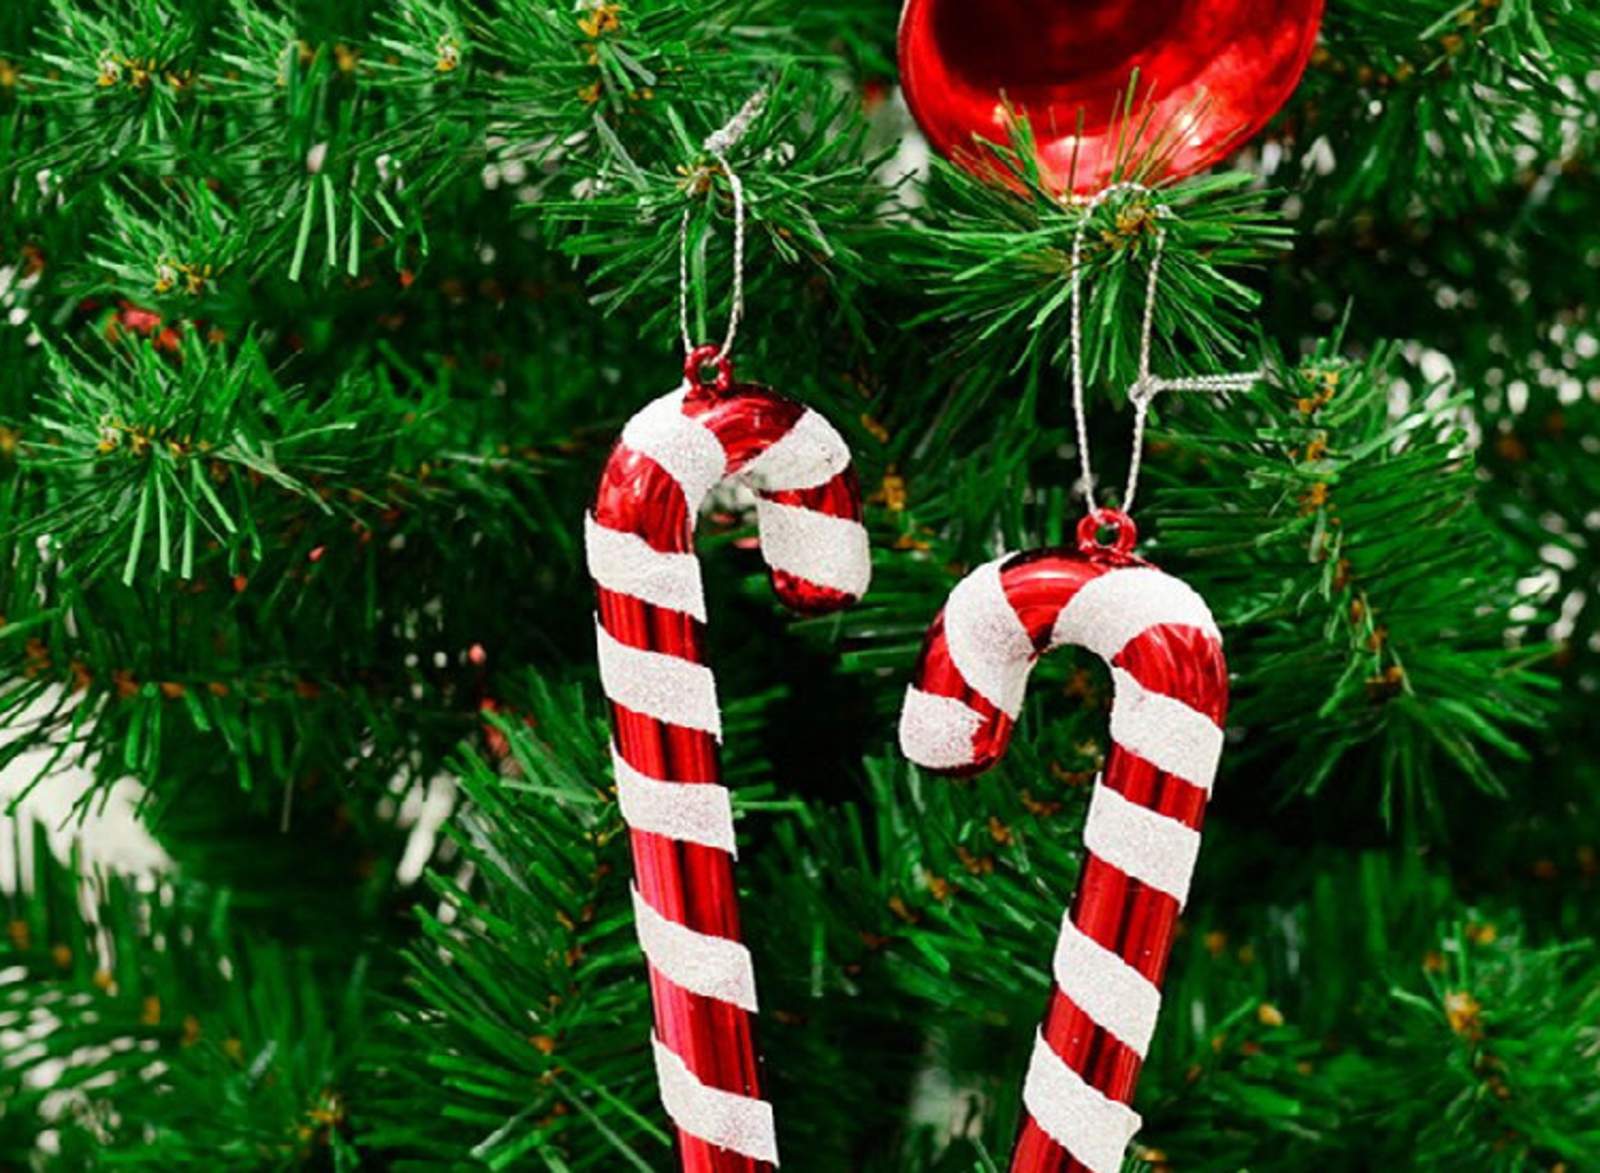 Directora prohíbe decorar con árboles de navidad los salones. Noticias en tiempo real